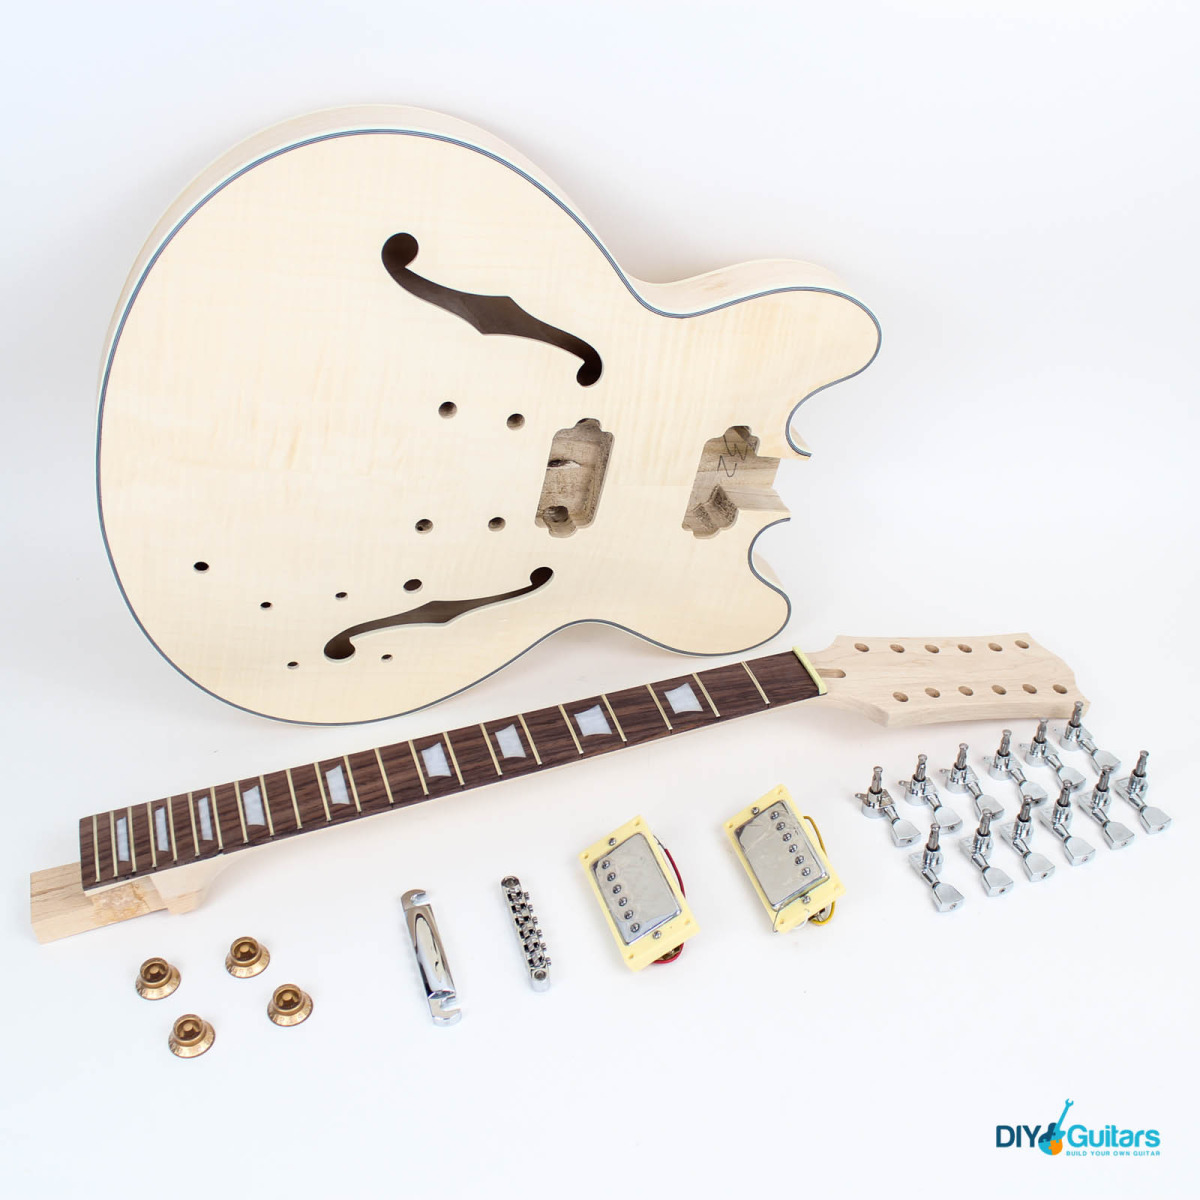 12 String Semi-Hollow Gibson 335 - DIY Guitars jazz bass wiring kit 